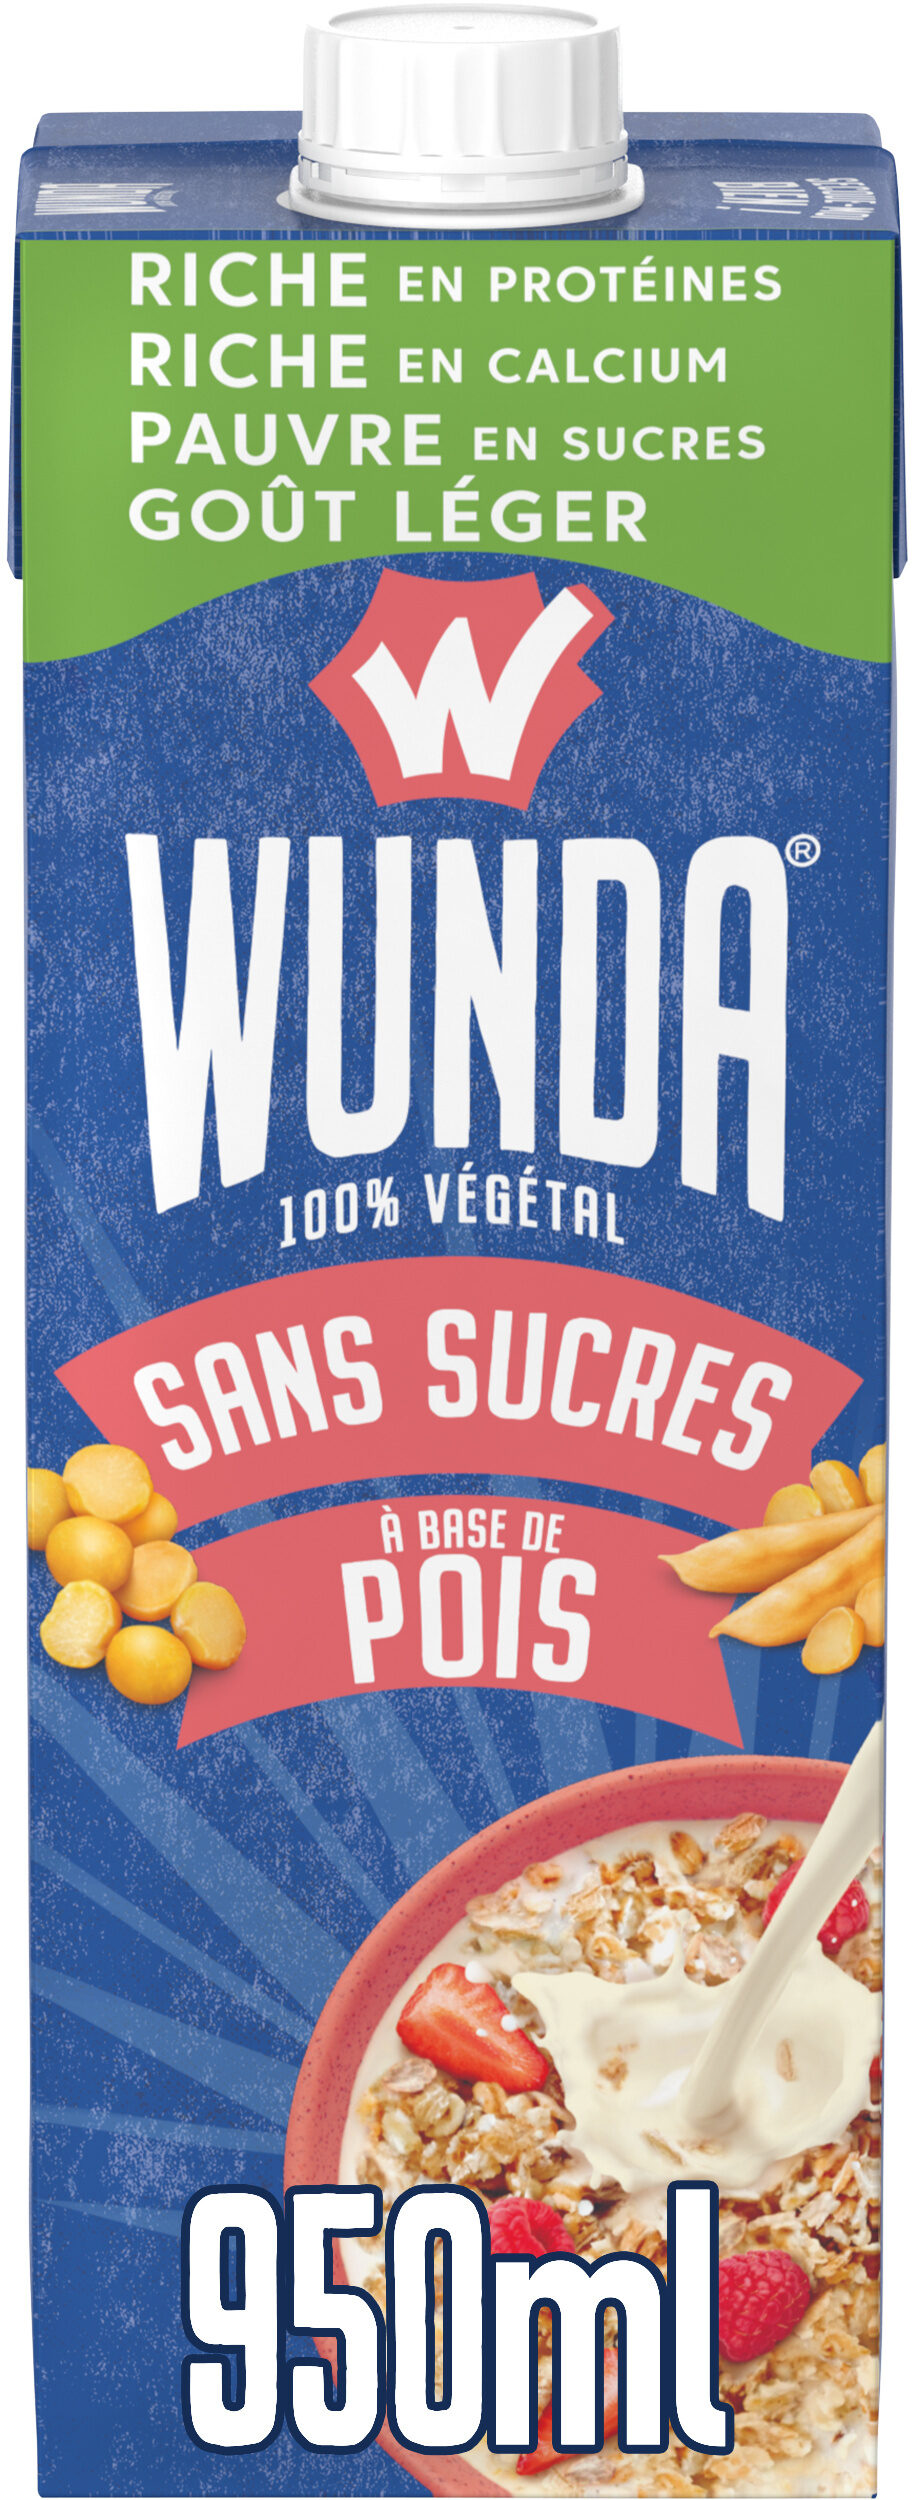 WUNDA Sans sucres 950ml - Produkt - fr